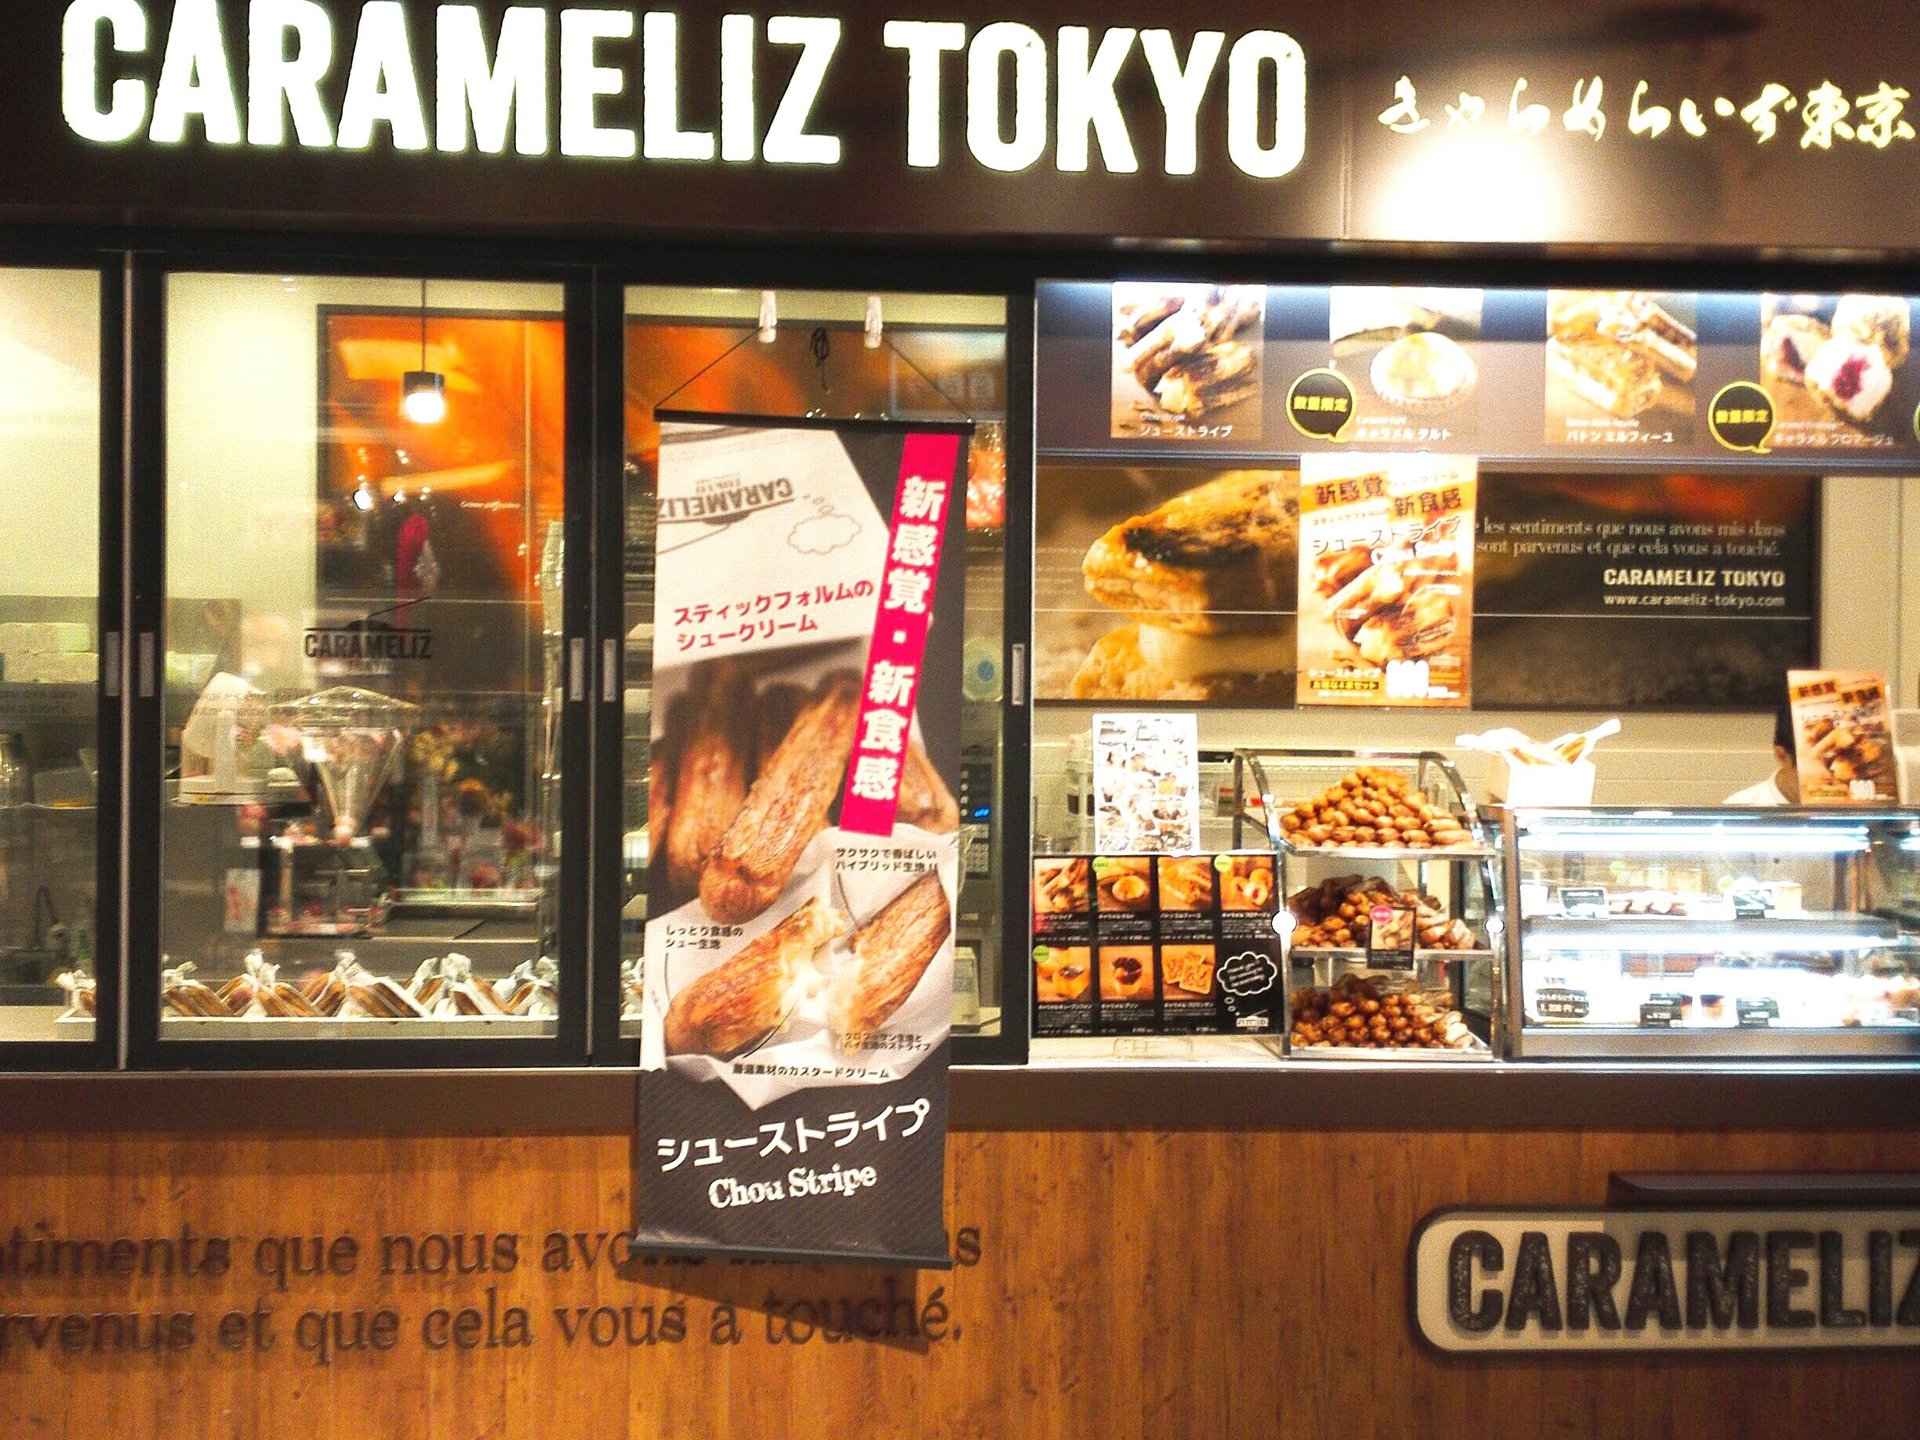 有楽町で手軽にさくっとサクサクなシュークリームなら「きゃらめらいず東京」